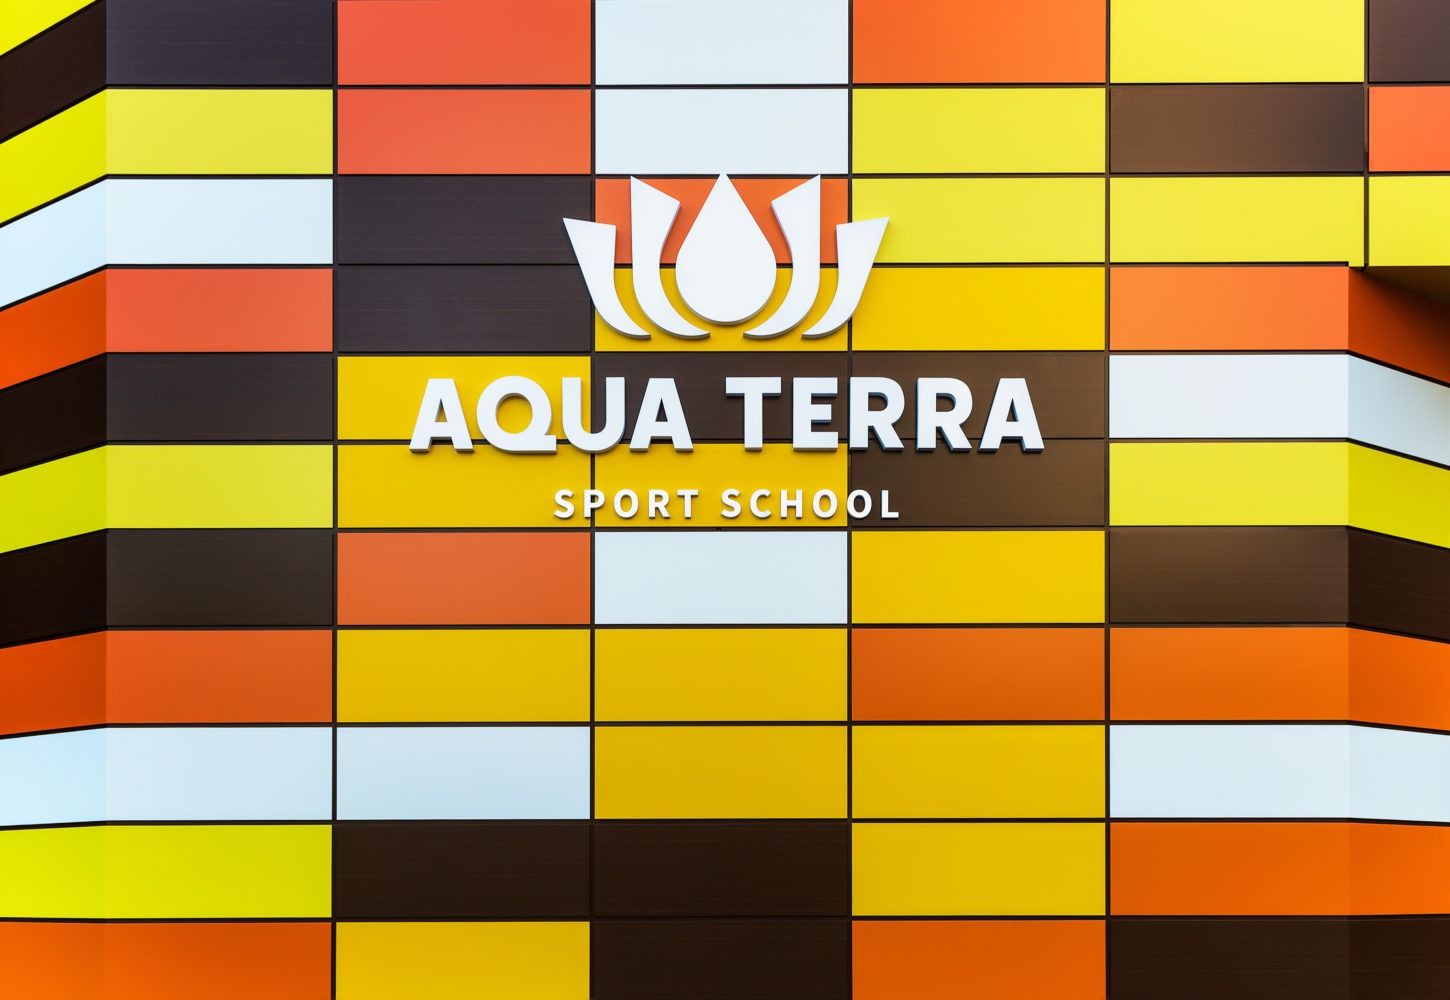 Aquaterra Sport School